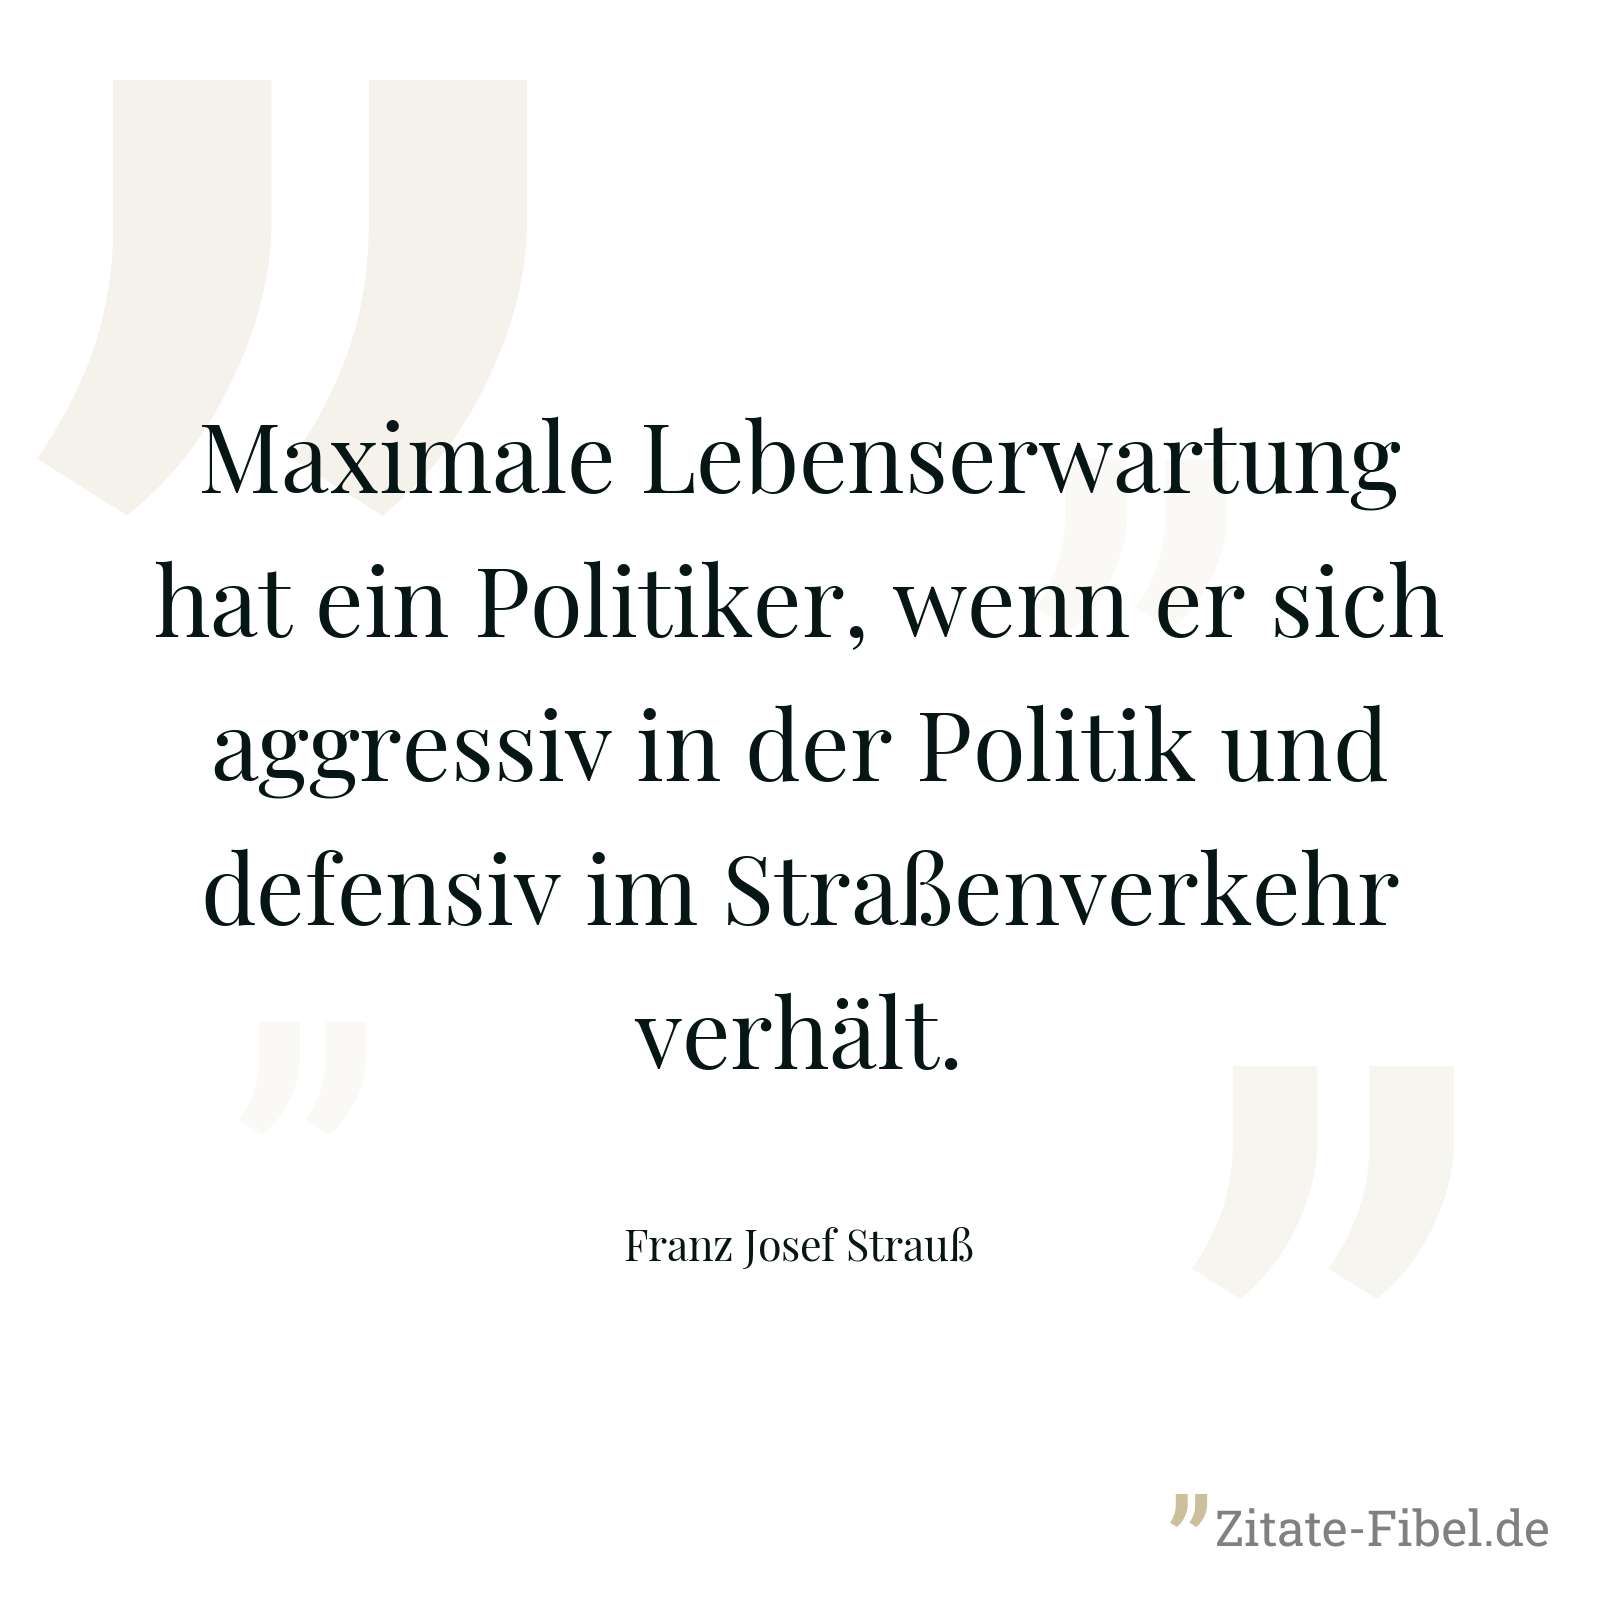 Maximale Lebenserwartung hat ein Politiker, wenn er sich aggressiv in der Politik und defensiv im Straßenverkehr verhält. - Franz Josef Strauß